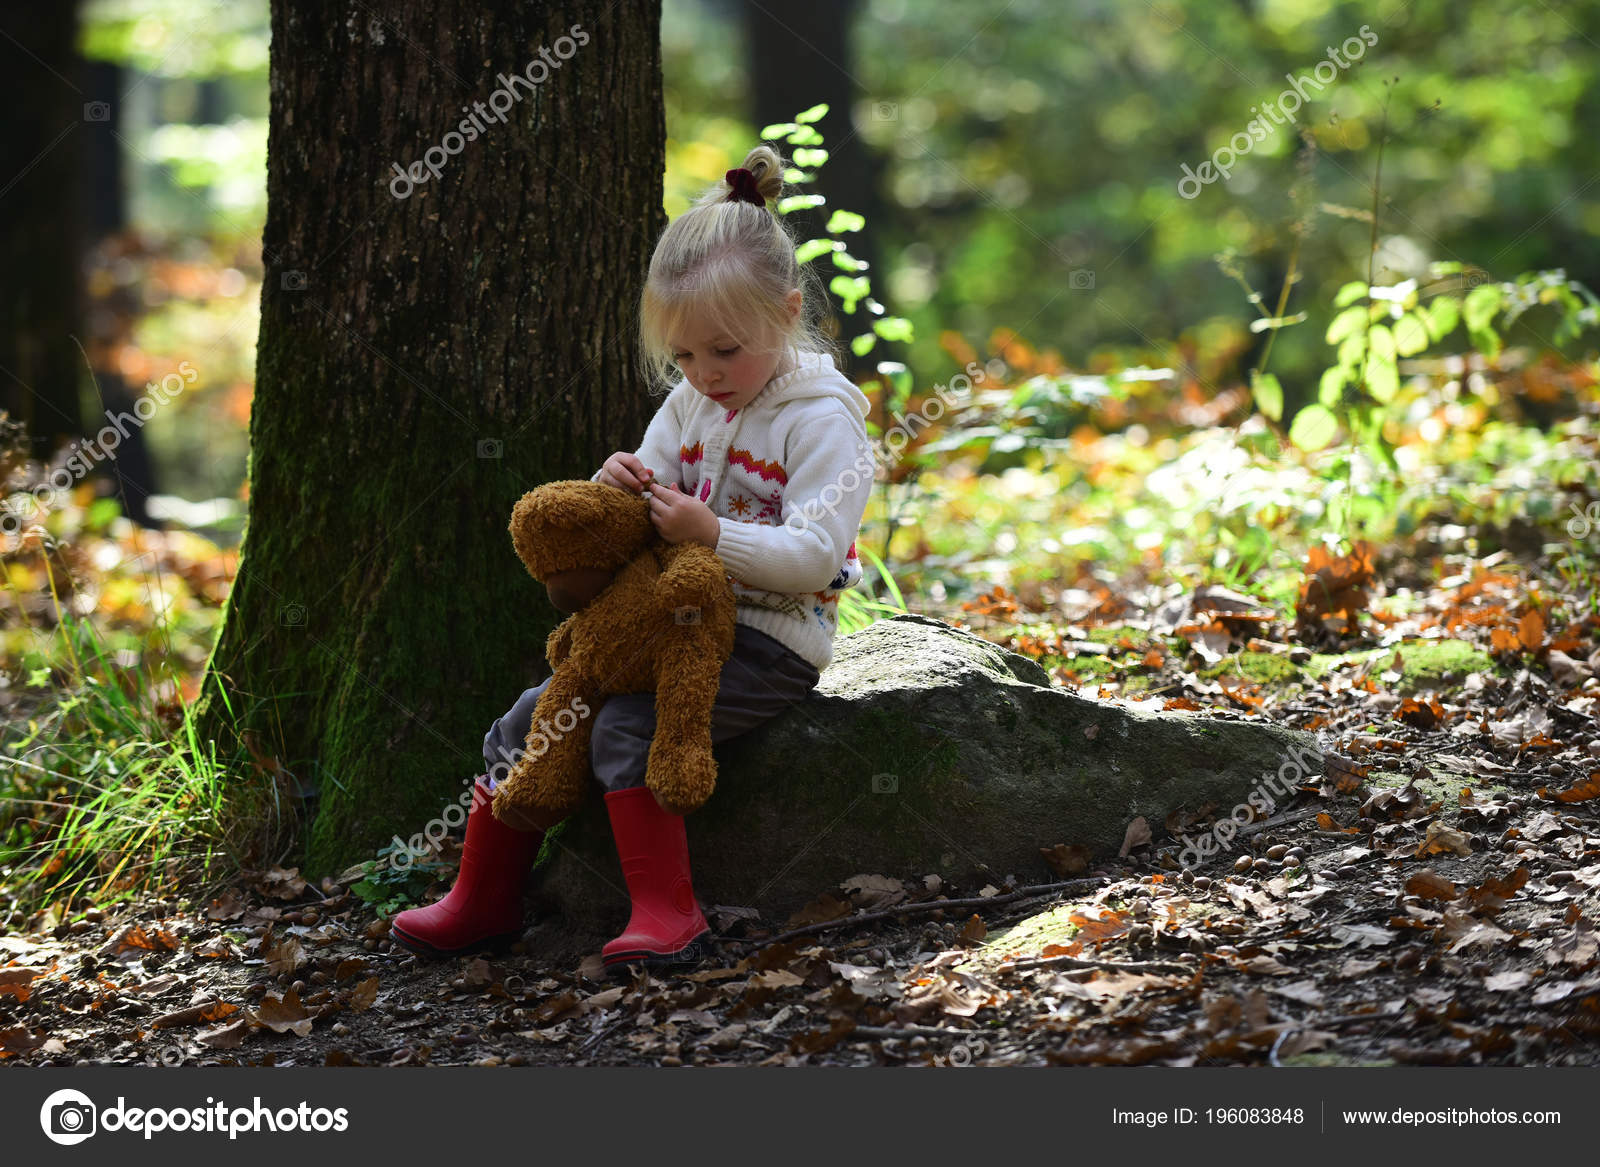 Игры в лесу с детьми: новые идеи для прогулок с детьми